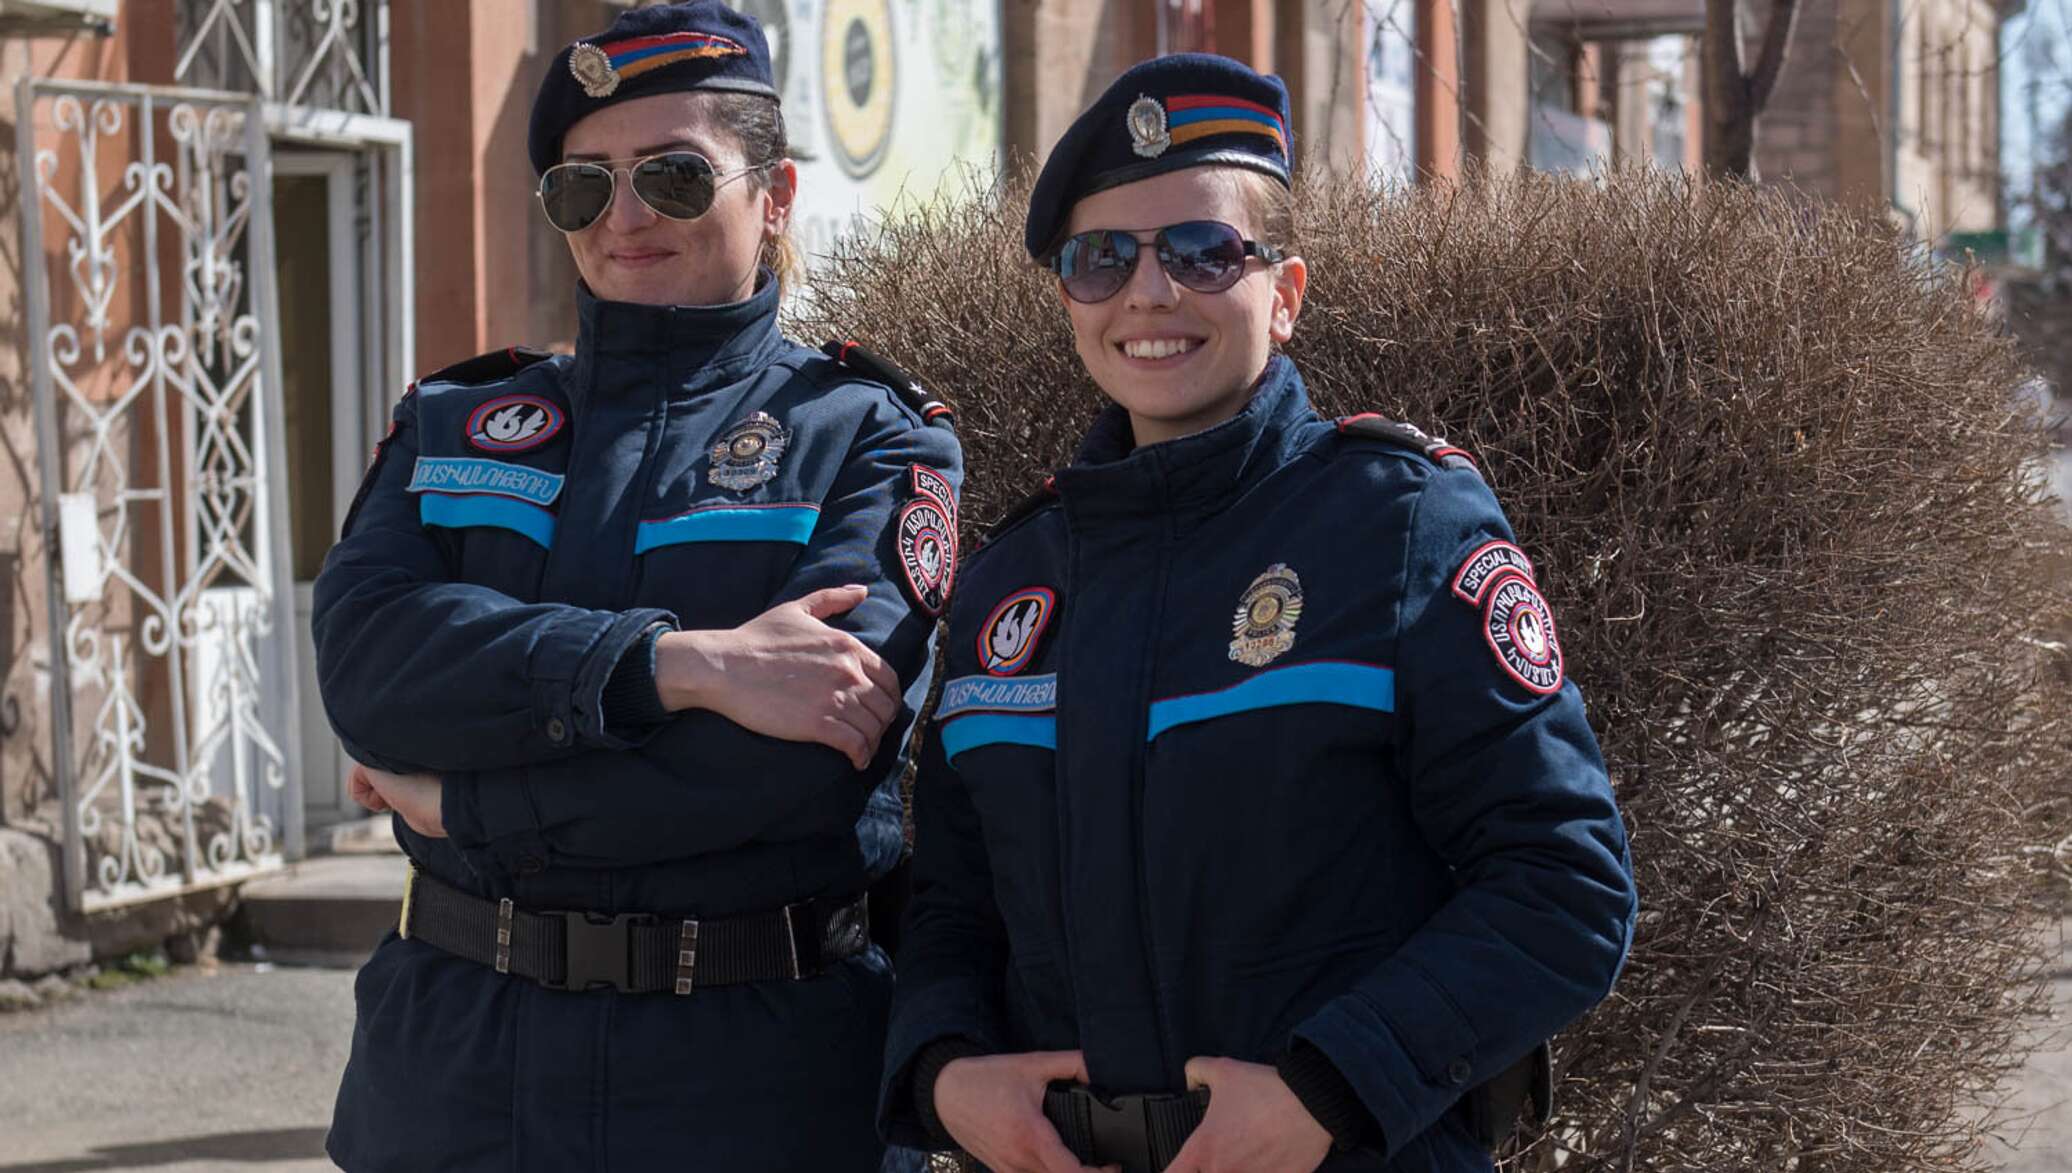 Polis am. Полиция Армении. Форма полиции Армении. Полиция Еревана. Форма армянских полицейских.